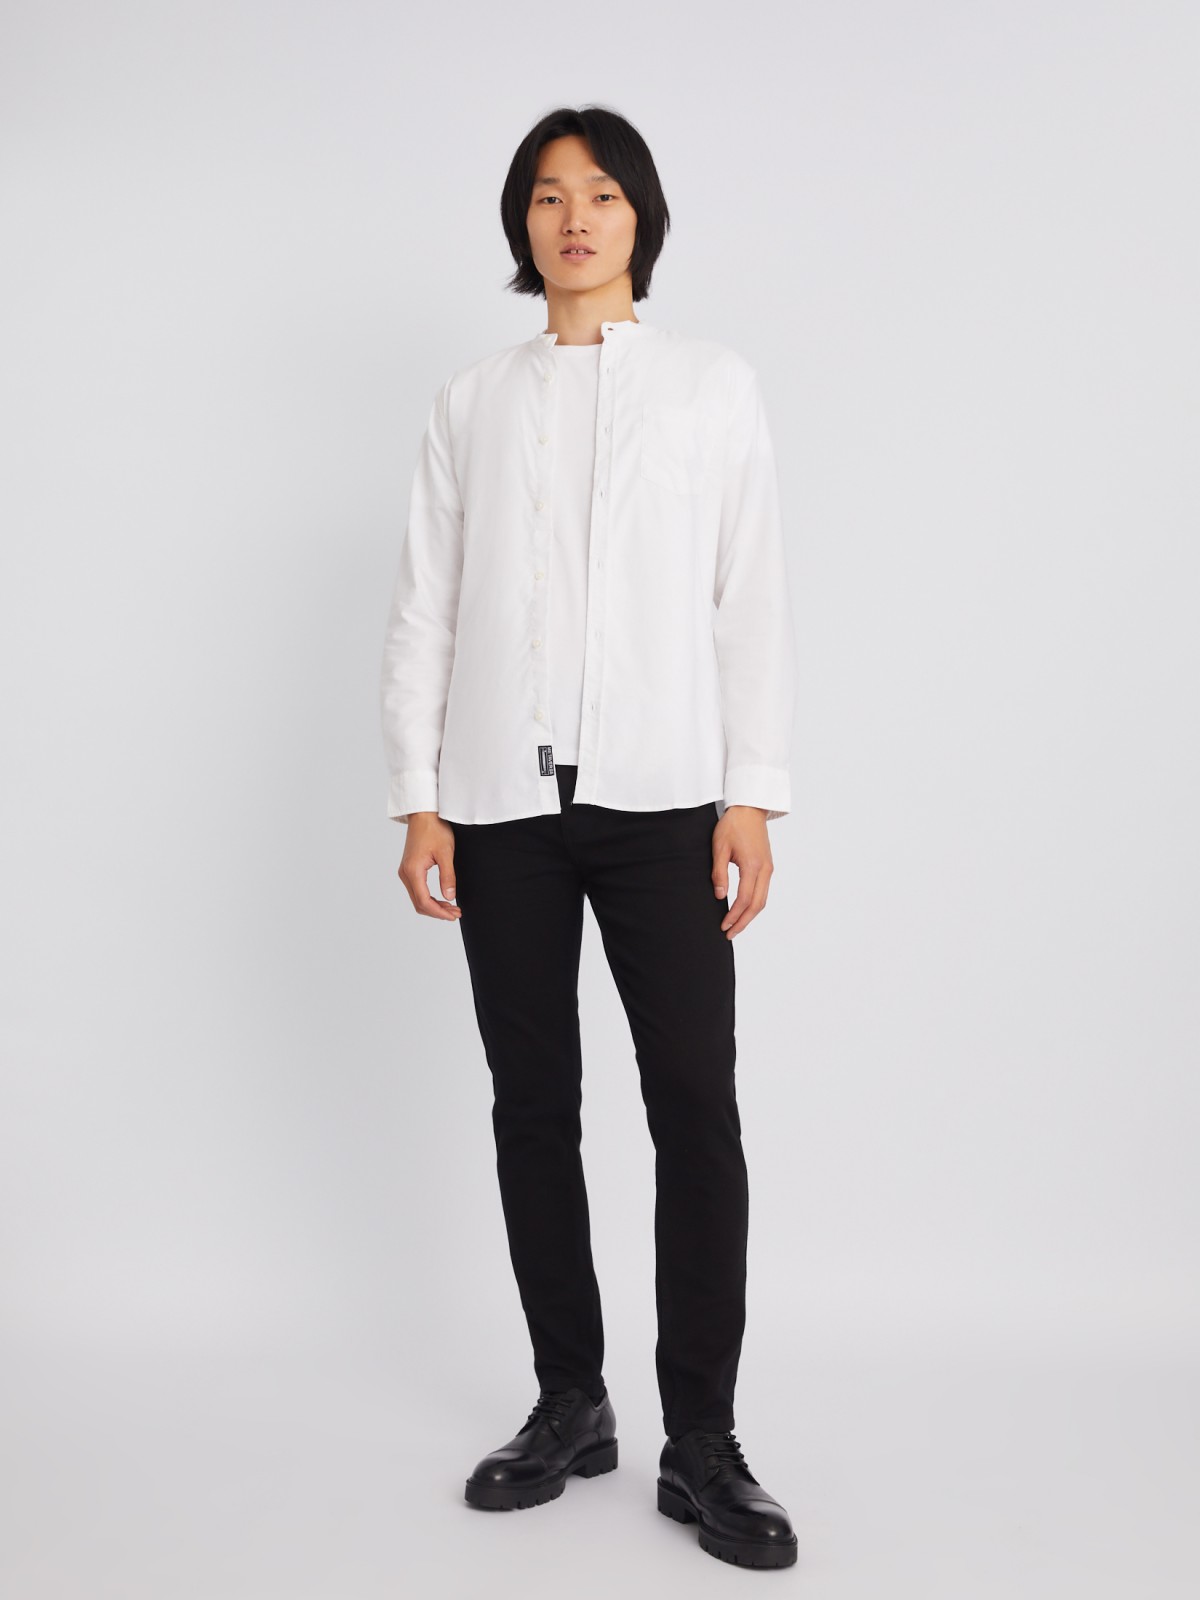 Офисная рубашка с воротником-стойкой и длинным рукавом zolla 21232214R043, цвет белый, размер S - фото 2